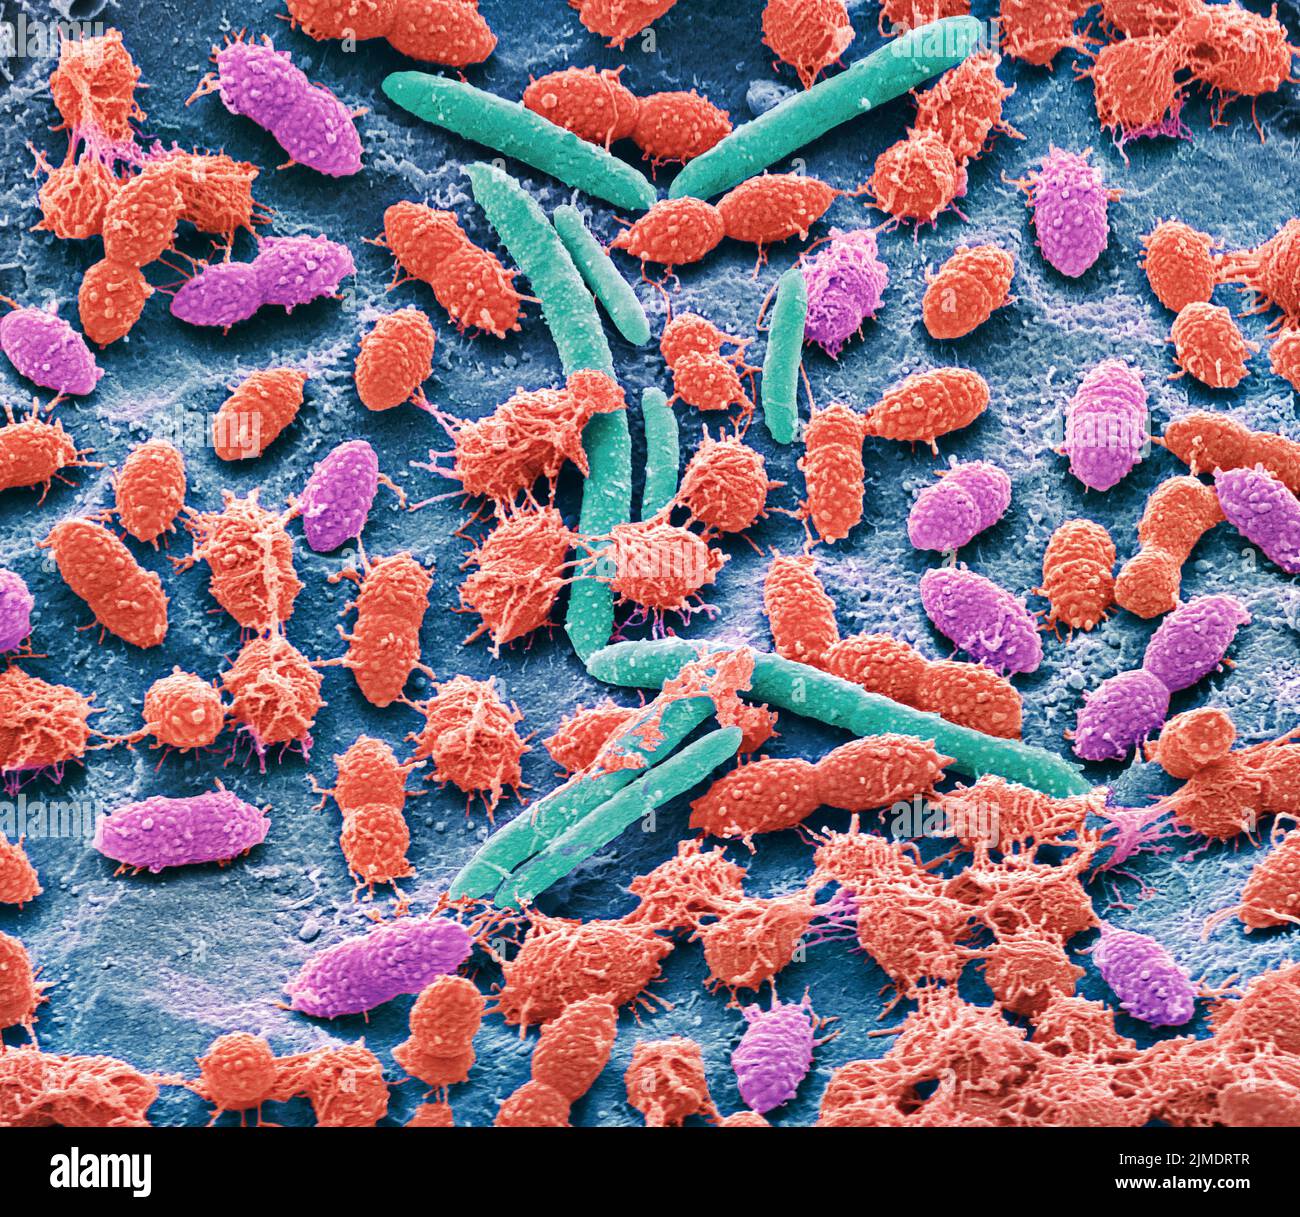 Les bactéries fécales, sem Banque D'Images